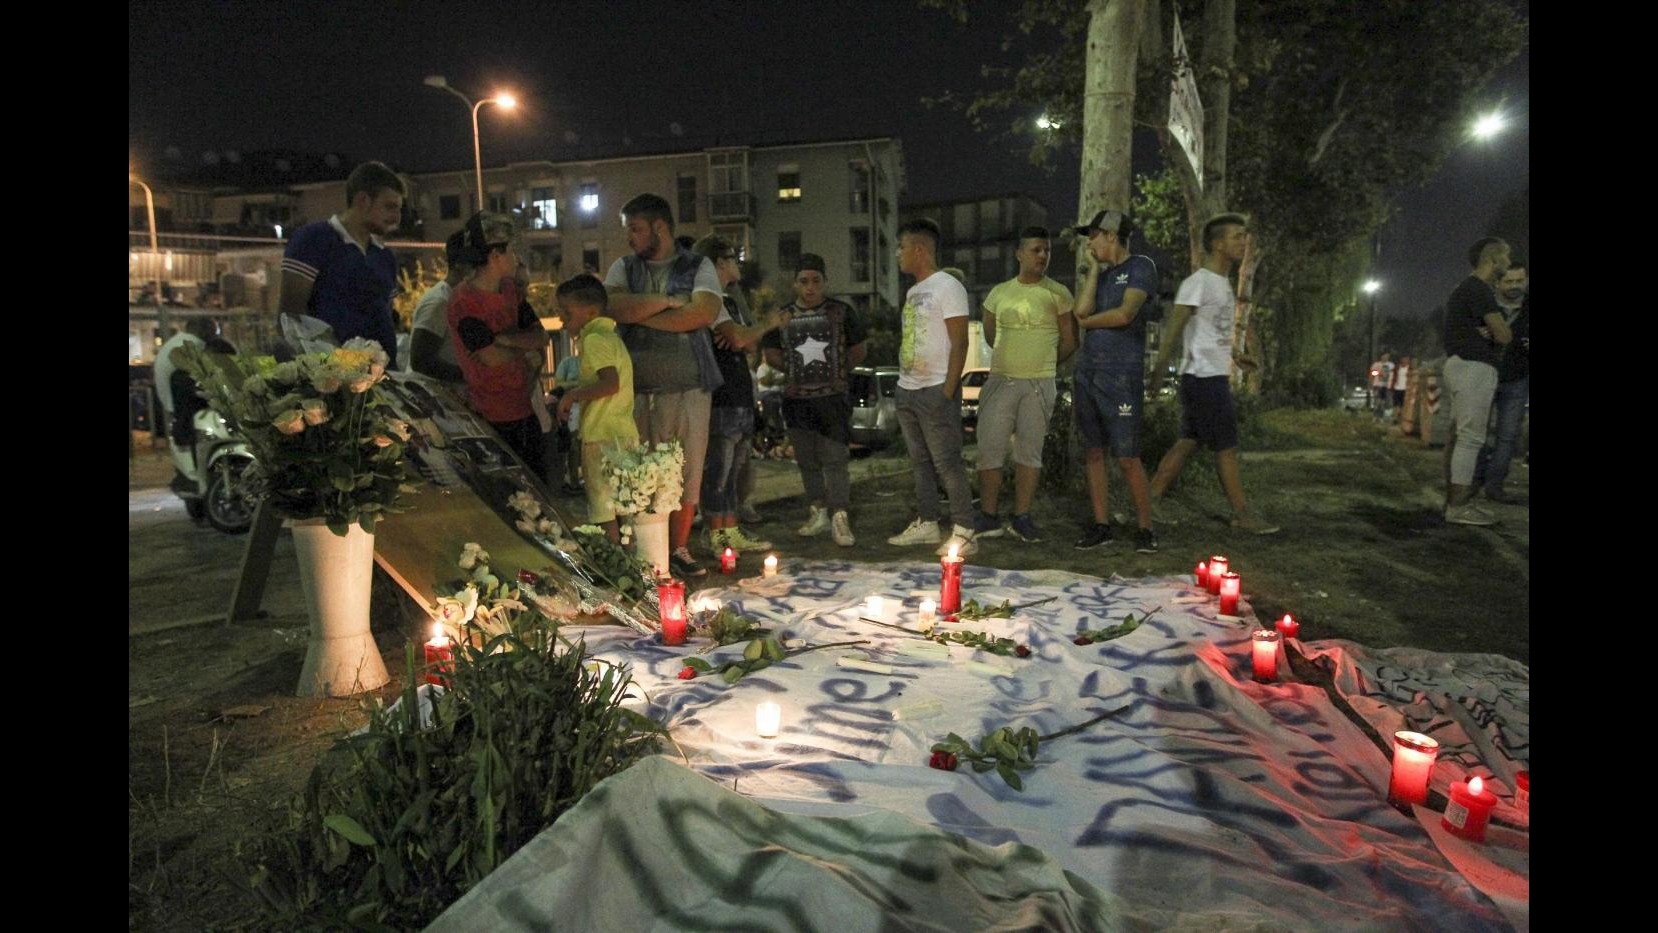 Napoli, scrivono ‘Carabiniere assassino’ in ufficio vigili: denunciati